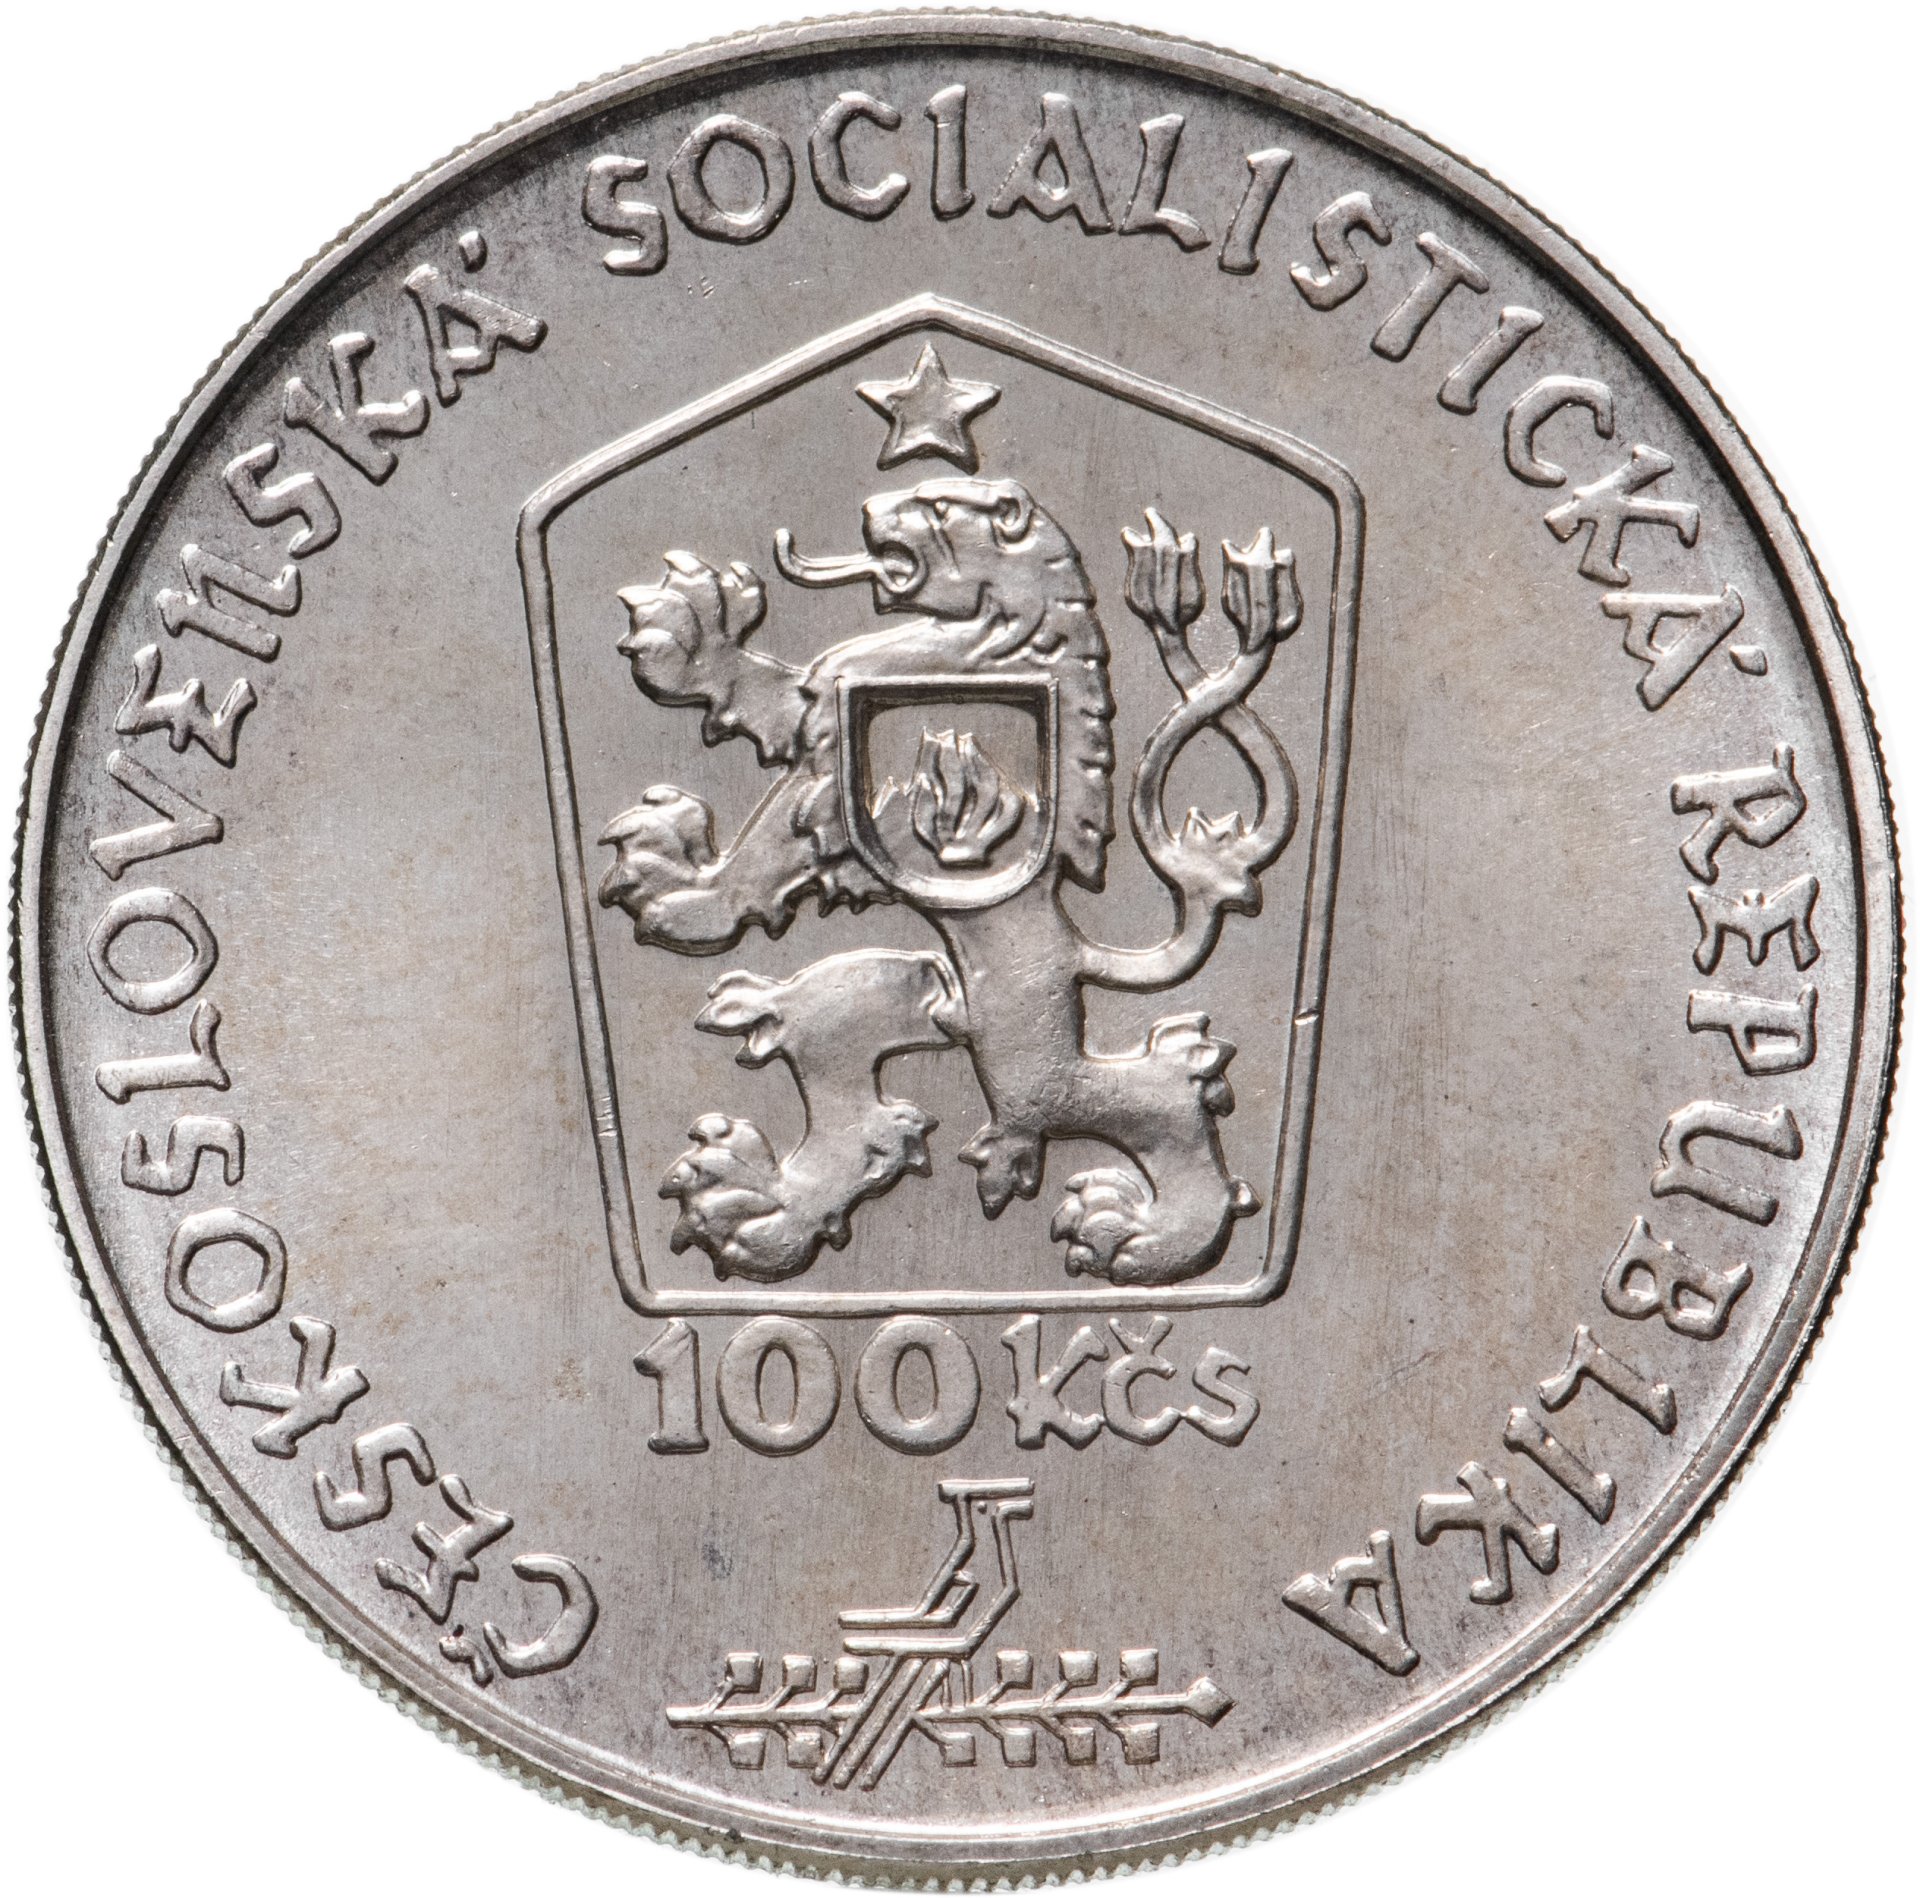 100 крон чехословакия. 100 Крон Чехия. 100 Крон. Мешок аукцион Коллекционирование монеты серебро 1949 год Чех 100 крон.